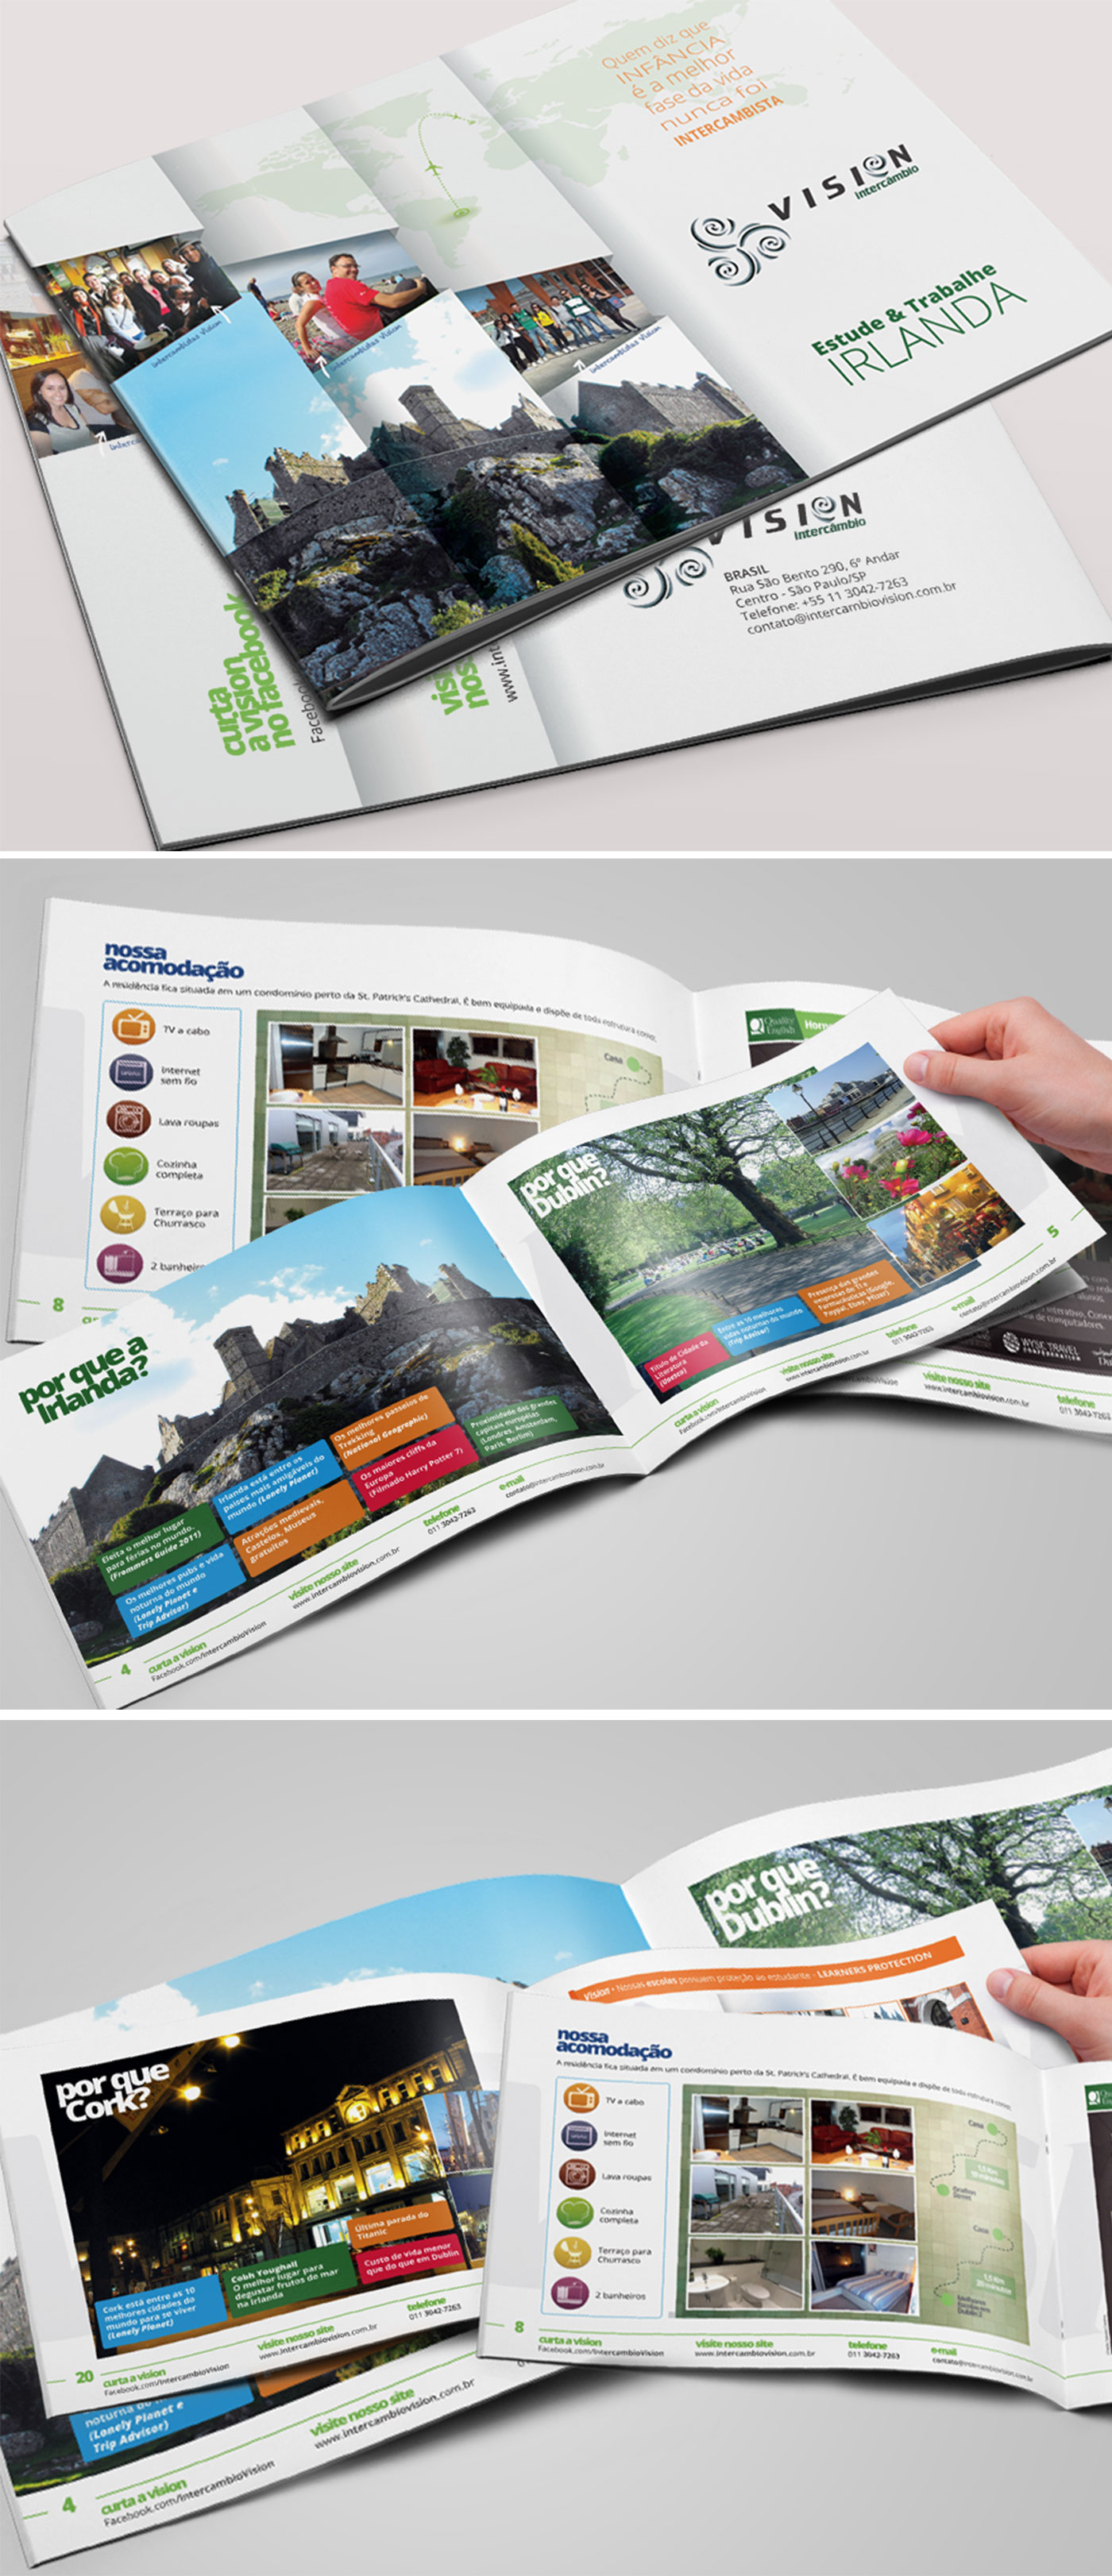 Brochura / Folder sobre intercâmbio na Irlanda desenvolvido para a empresa Vision Intercâmbio